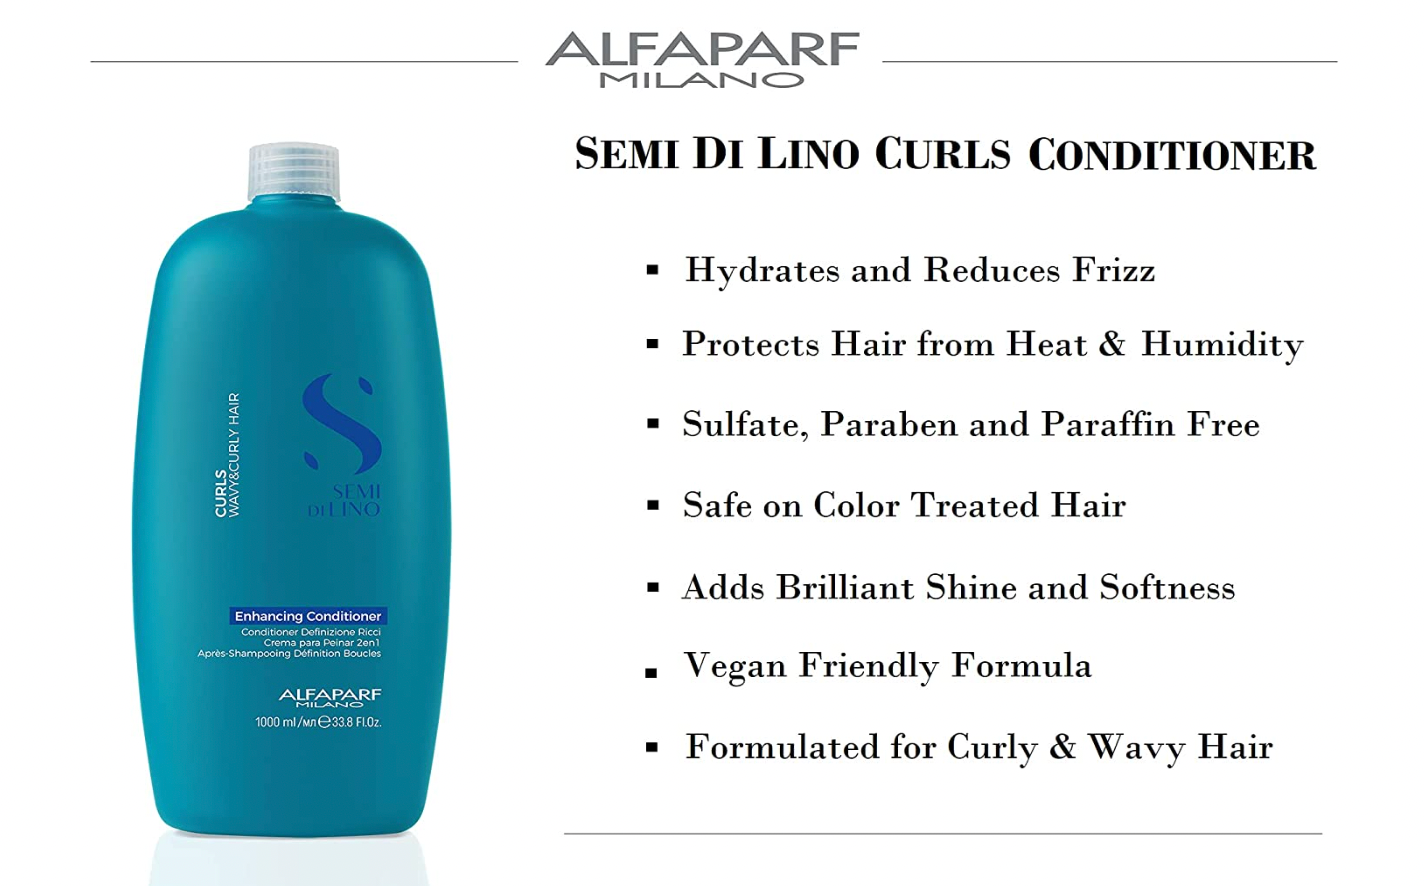 ALFAPARF MILANO SEMI DI LINO Enhancing Conditioner Curls Wavy & Curly Hair 1000ml